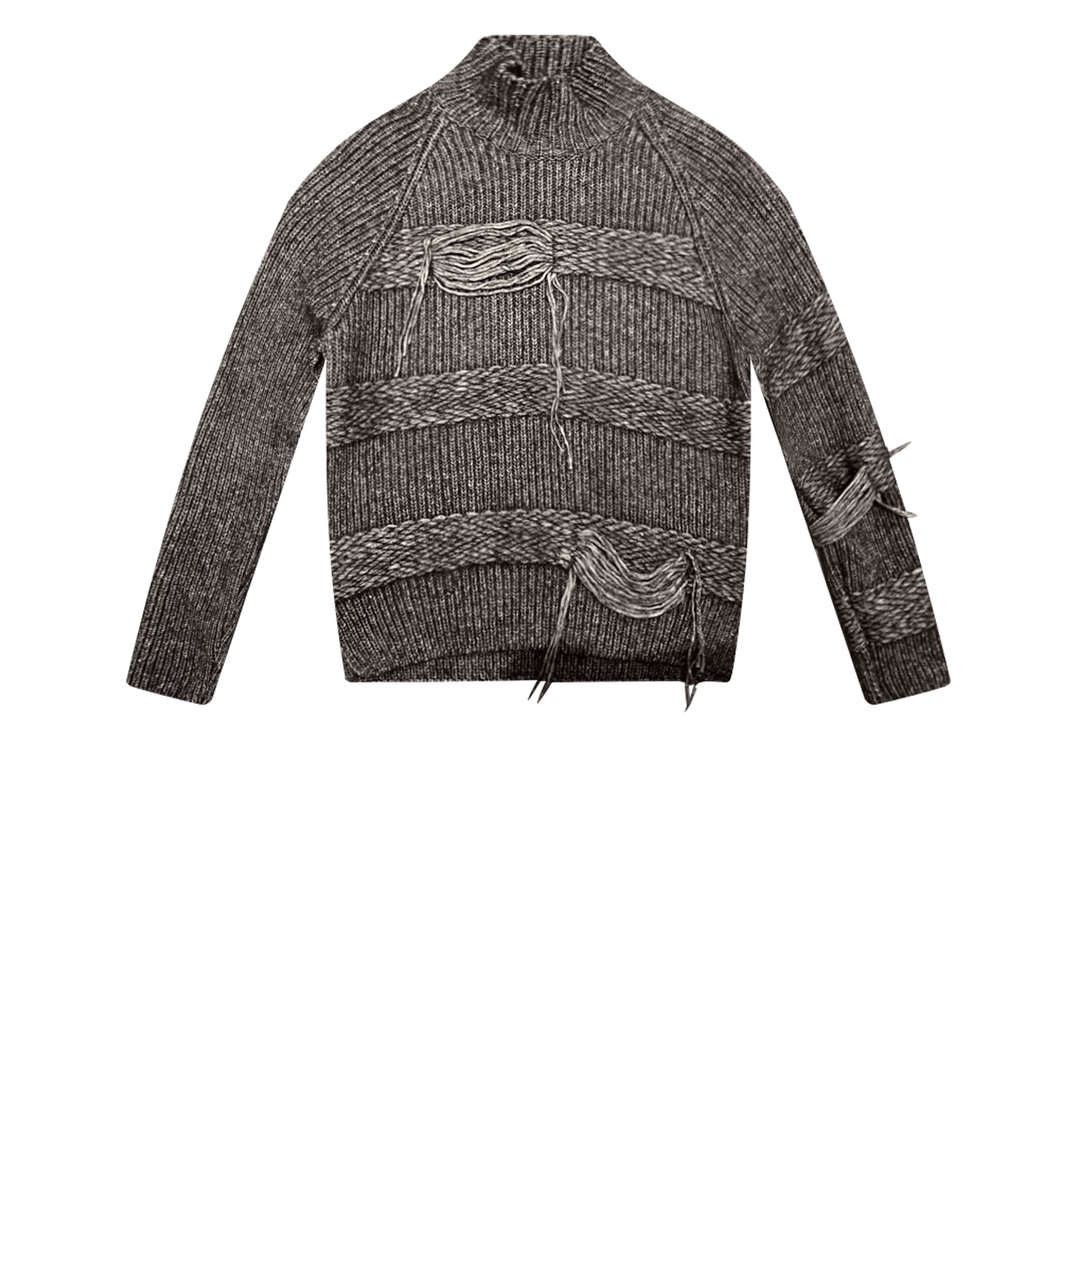 MRZ Антрацитовый шерстяной джемпер / свитер, фото 1